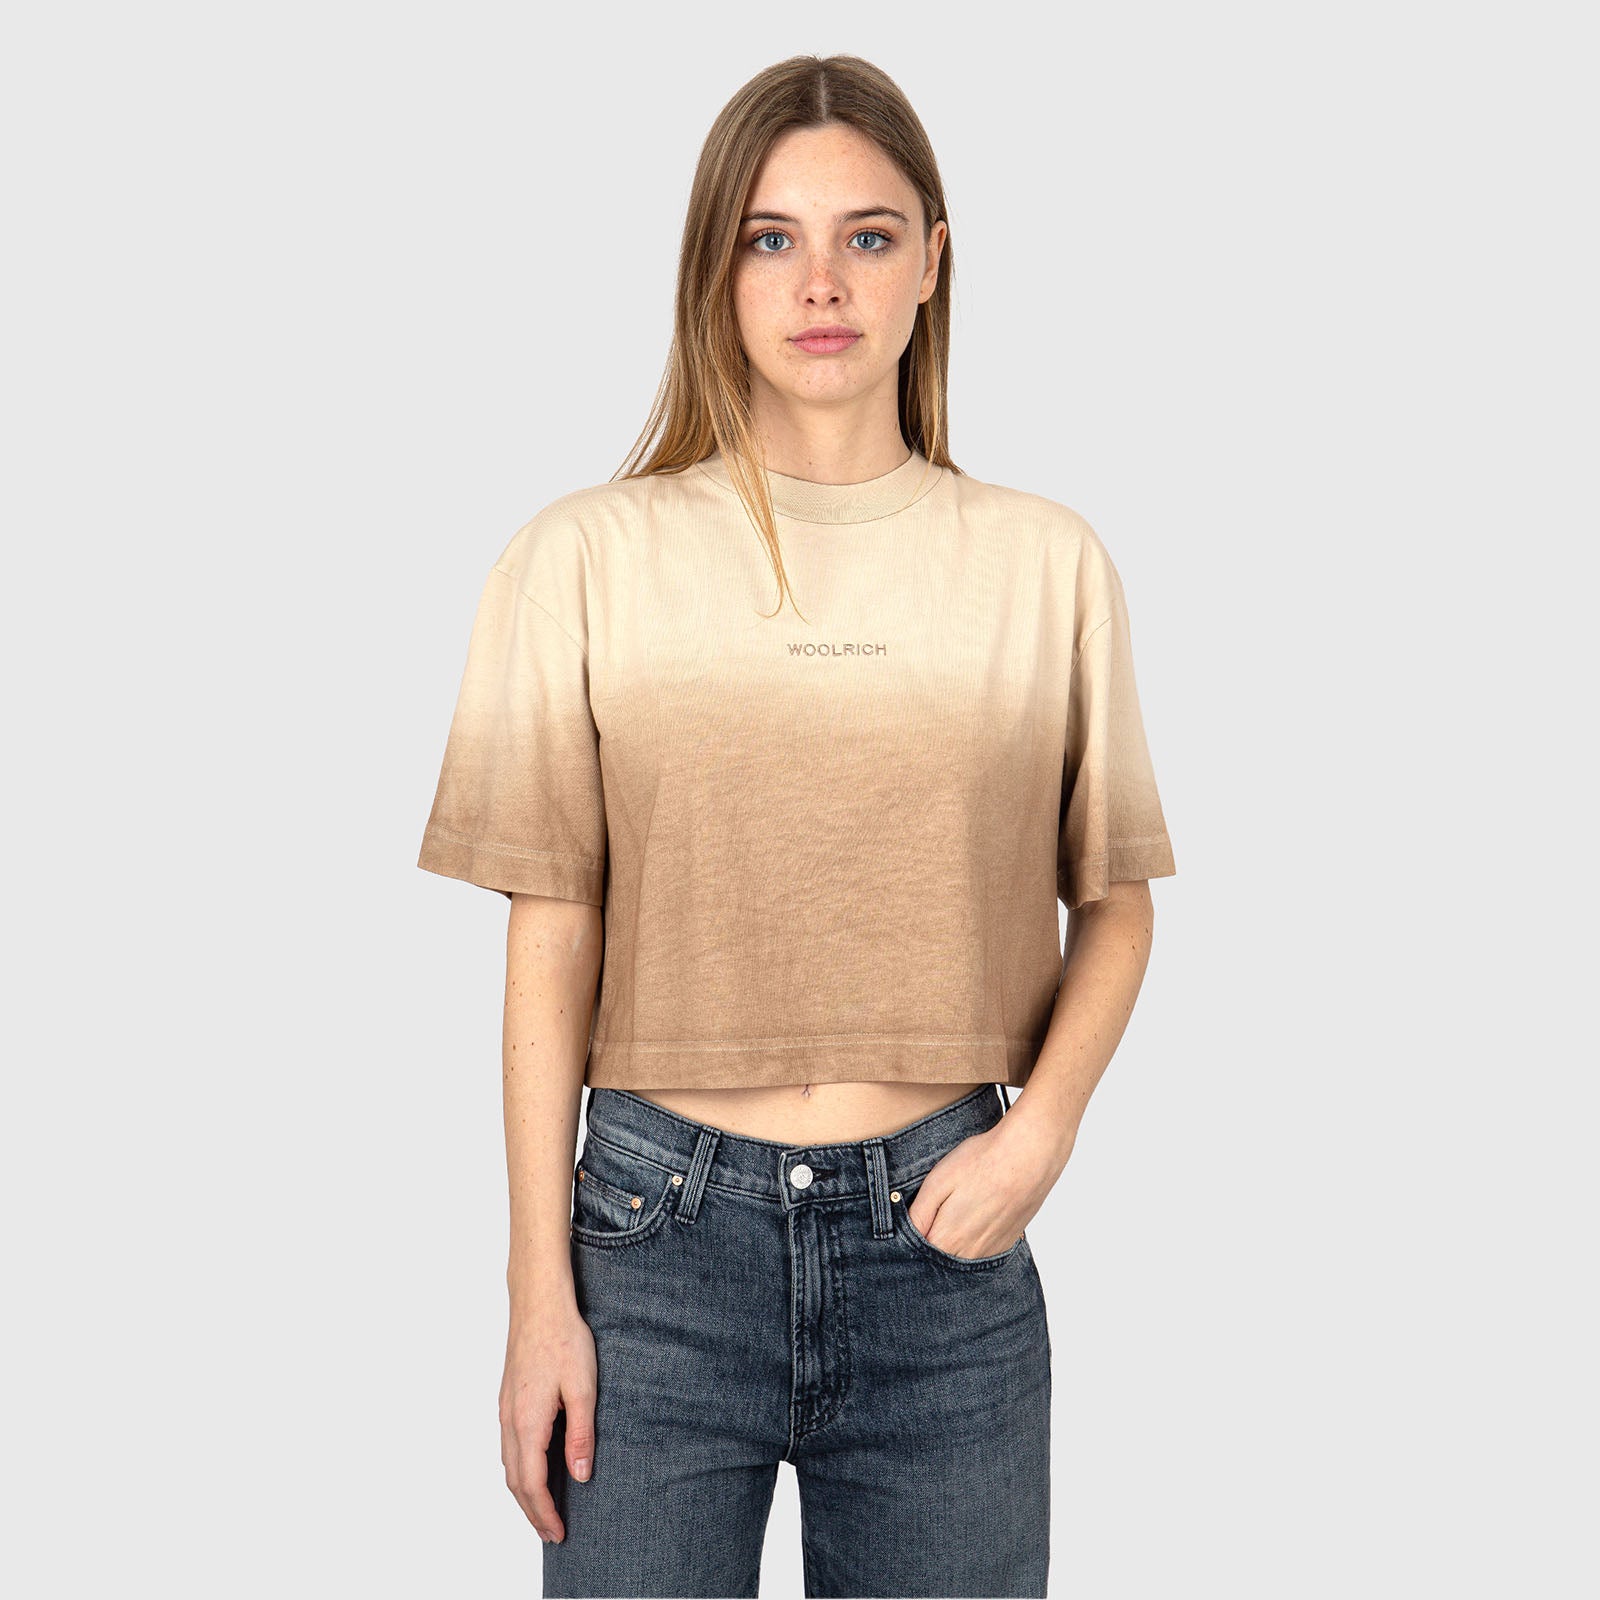 Woolrich T-Shirt Tye Dye Cotton Beige - 6